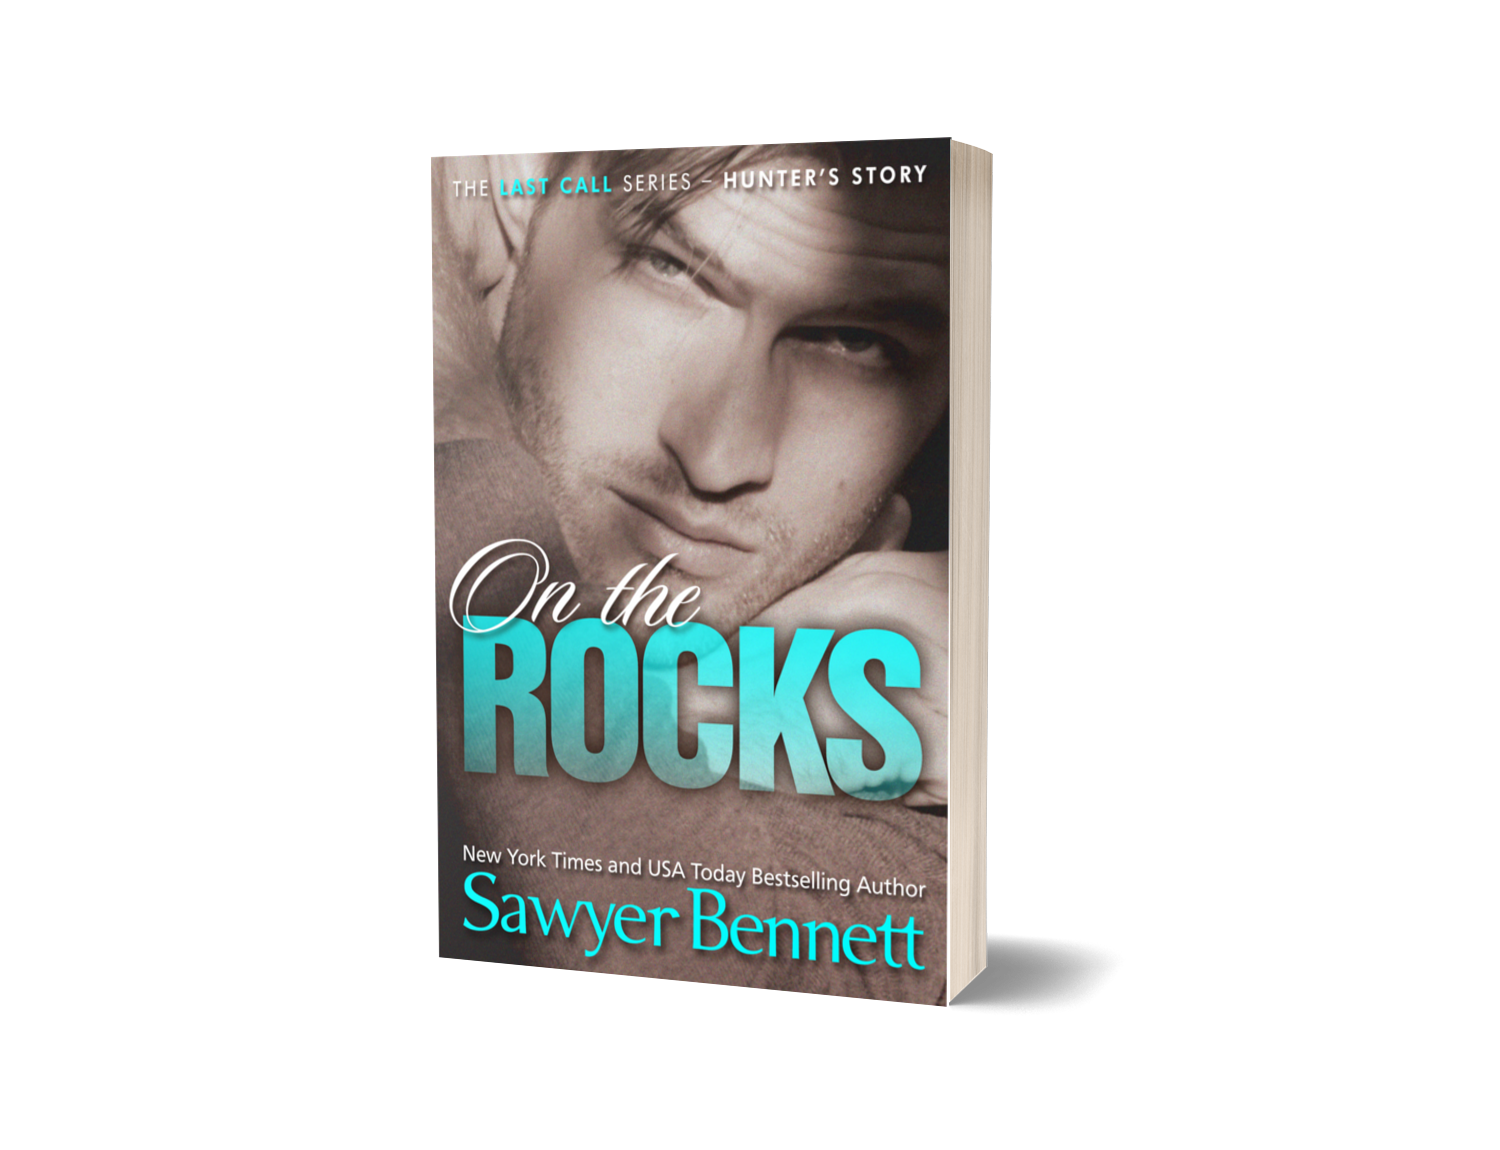 On the Rocks - Signed Paperback (ALTERNATE COVER) - Sawyer Bennett